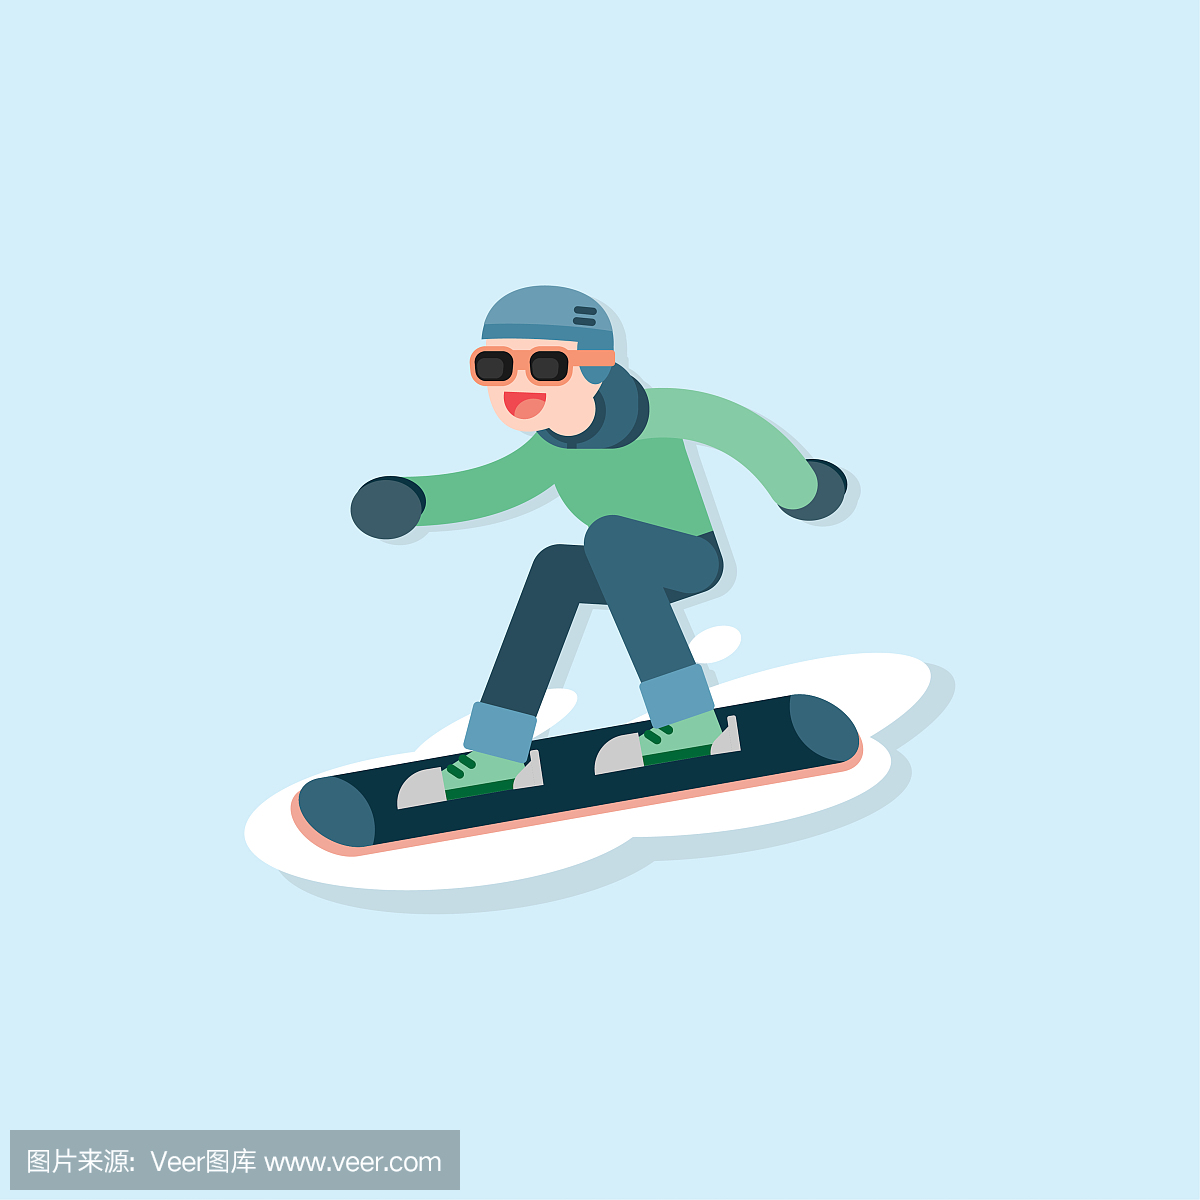 快乐的年轻人滑雪,冬季运动概念,矢量卡通插画